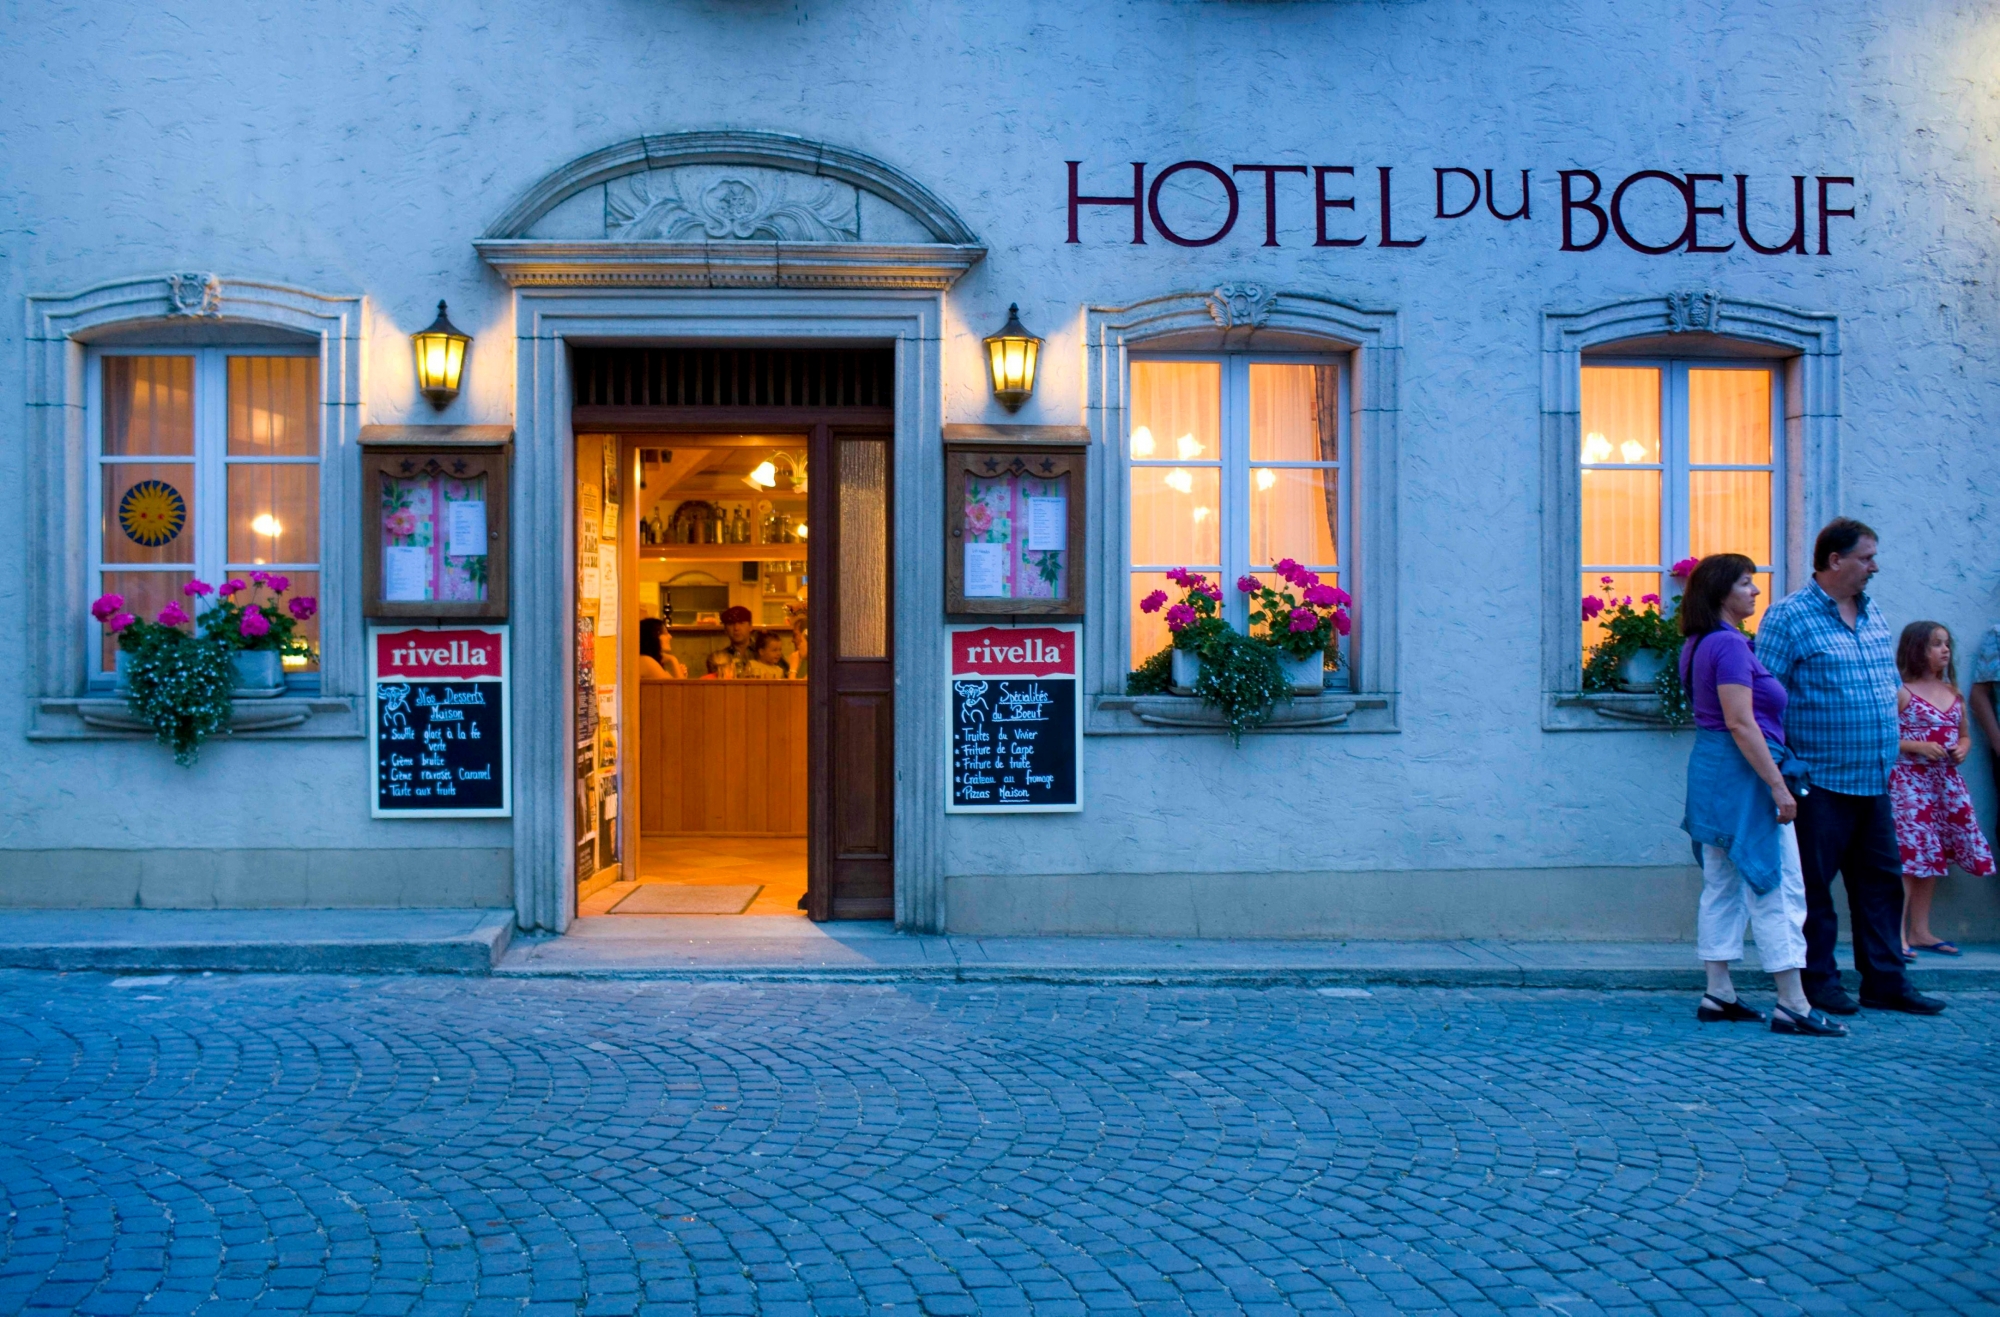 ARCHIV --- Passanten stehen vor dem Restaurant "Hotel du Boeuf" in Saint-Ursanne im Kanton Jura, aufgenommen am 31. Juli 2008. - Die Schweizer Hotellerie kann fuer 2008 das beste Tourismusjahr seit 1990 verbuchen, wie am Dienstag, 24. Februar 2009 bekannt gegeben wurde. Die Zahl der Uebernachtungen nahm gegenueber dem Vorjahr um 2,7 Prozent zu auf insgesamt 37,3 Millionen. (KEYSTONE/ Martin Ruetschi) SCHWEIZ TOURISMUS